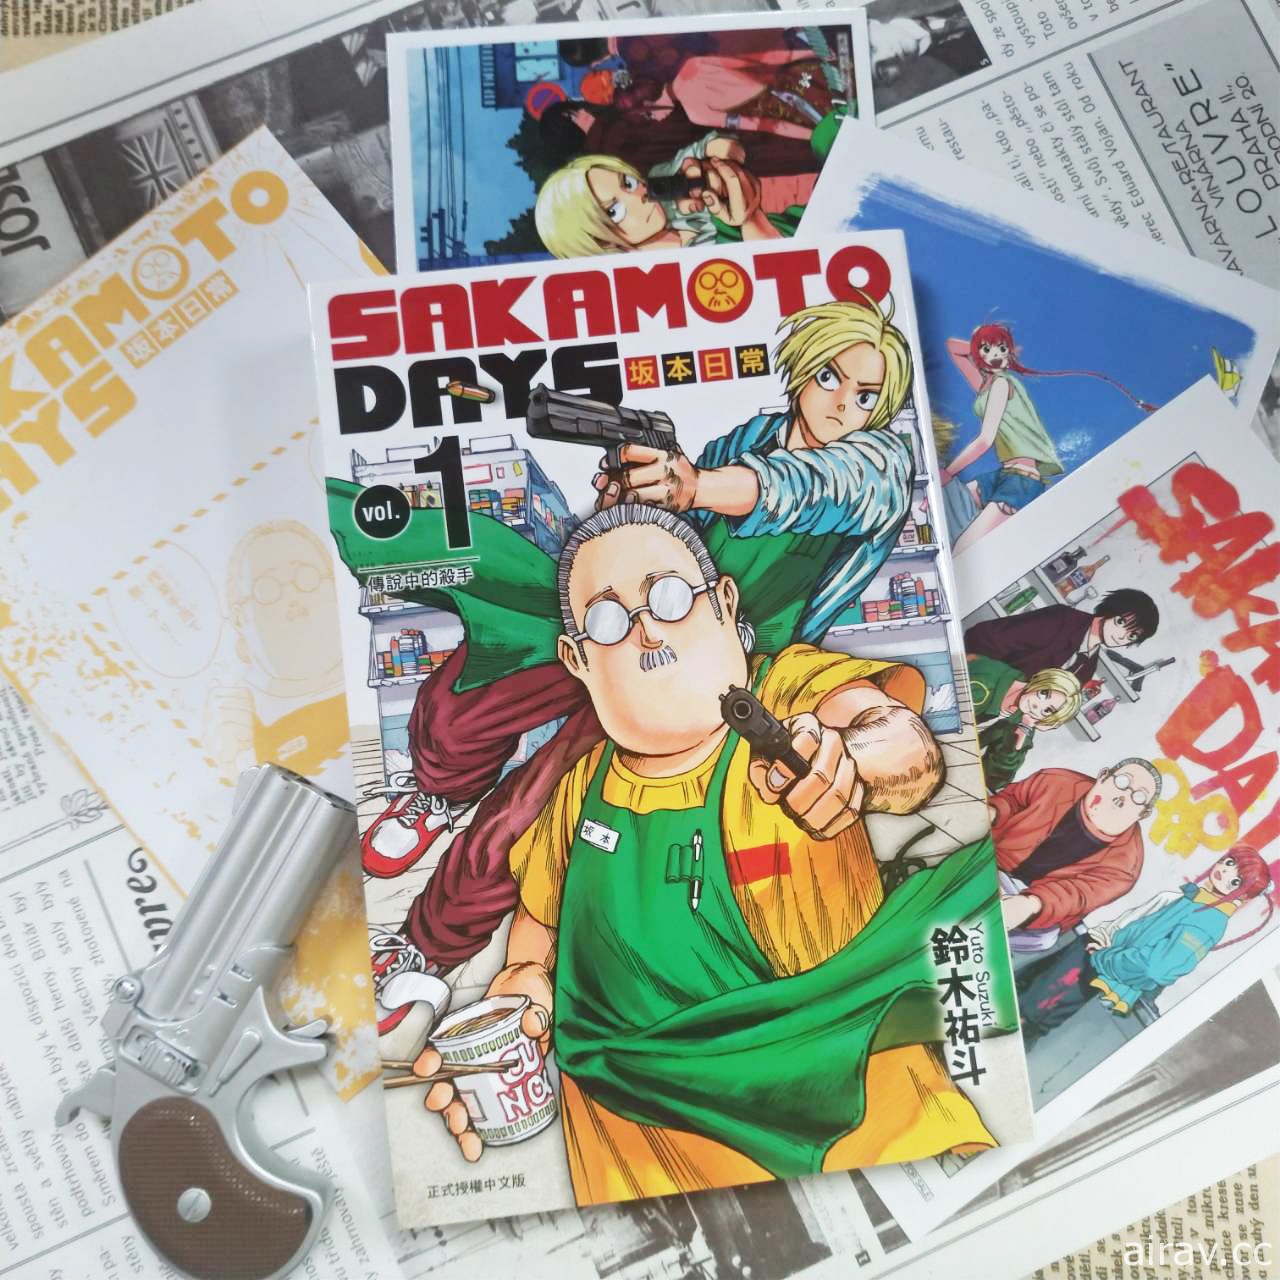 店长是前‧传说级杀手《SAKAMOTO DAYS 坂本日常》漫画单行本第 1 集在台上市